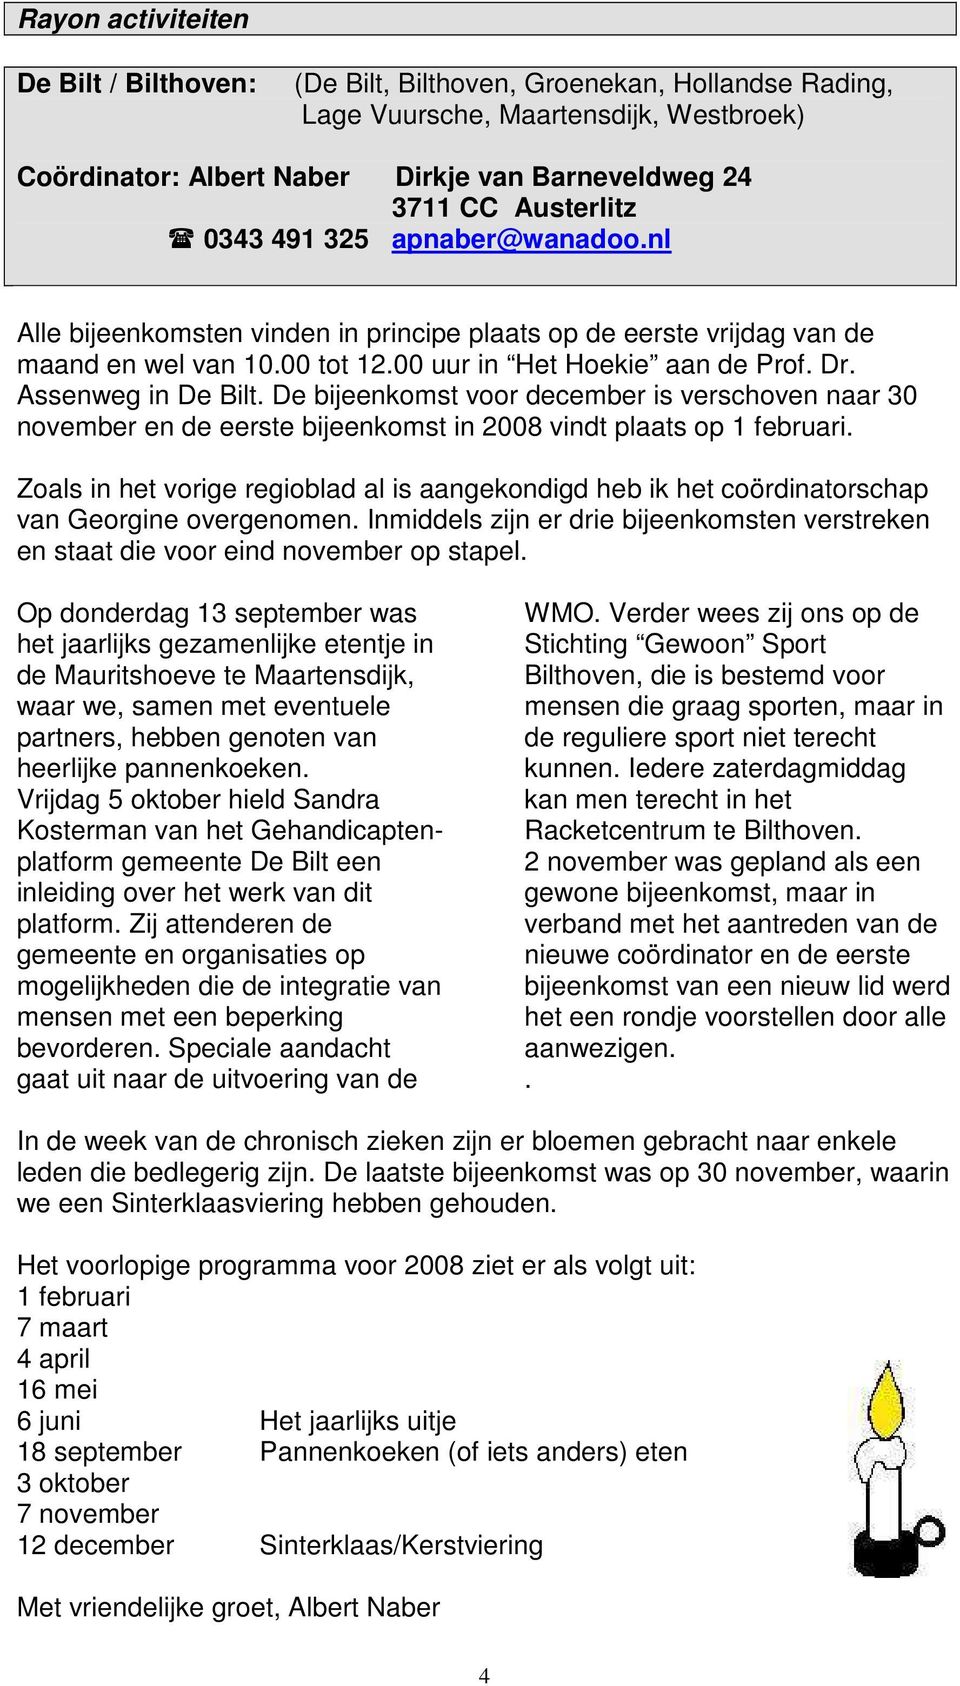 Assenweg in De Bilt. De bijeenkomst voor december is verschoven naar 30 november en de eerste bijeenkomst in 2008 vindt plaats op 1 februari.